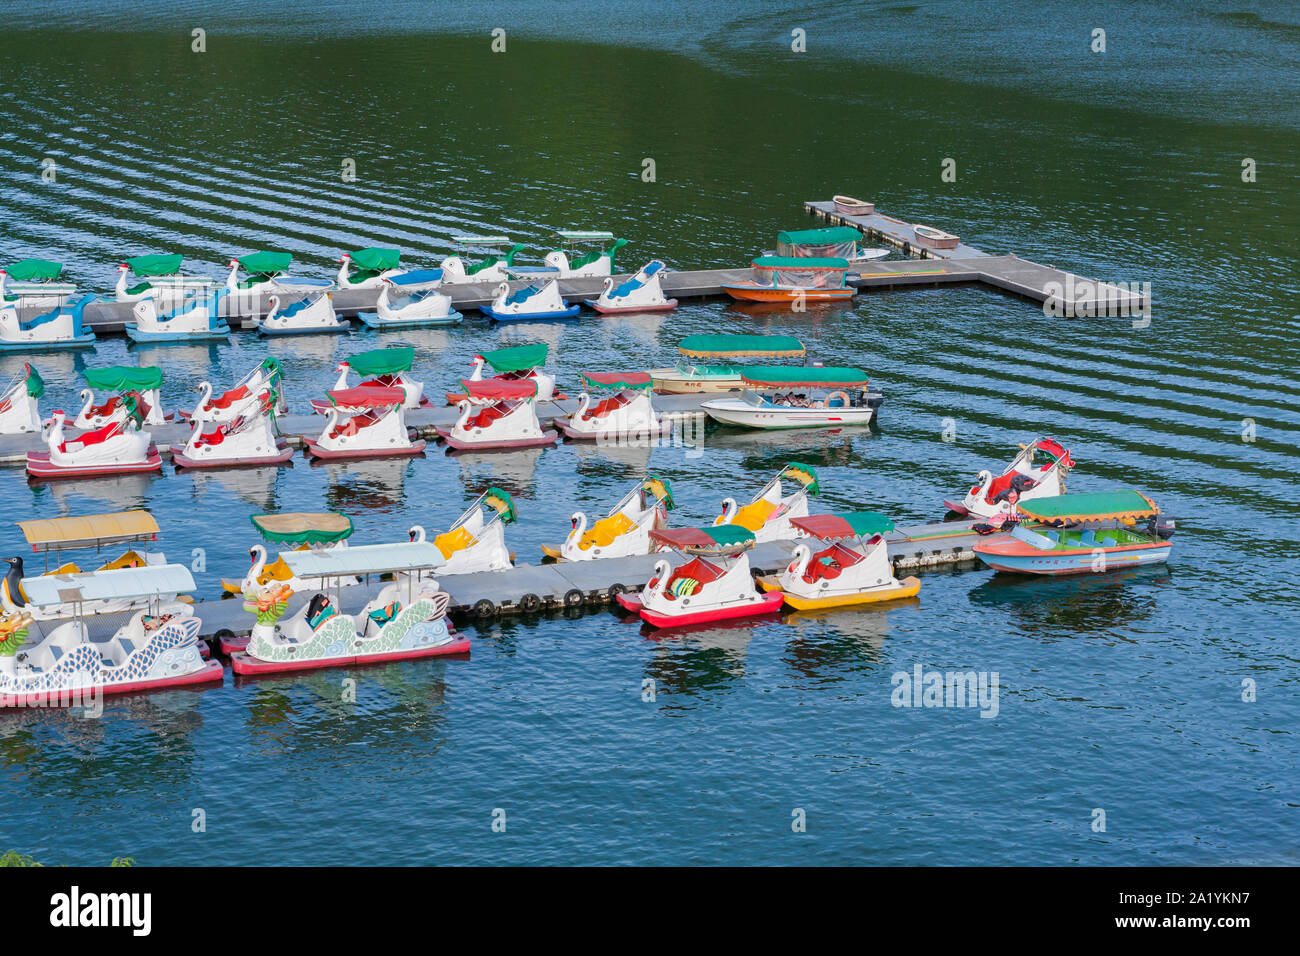 Swan paddle pédalos parking flottant à quai dans le lac Liyu (Carp Lake),  Shoufeng Township, comté de Hualien, Taiwan Photo Stock - Alamy